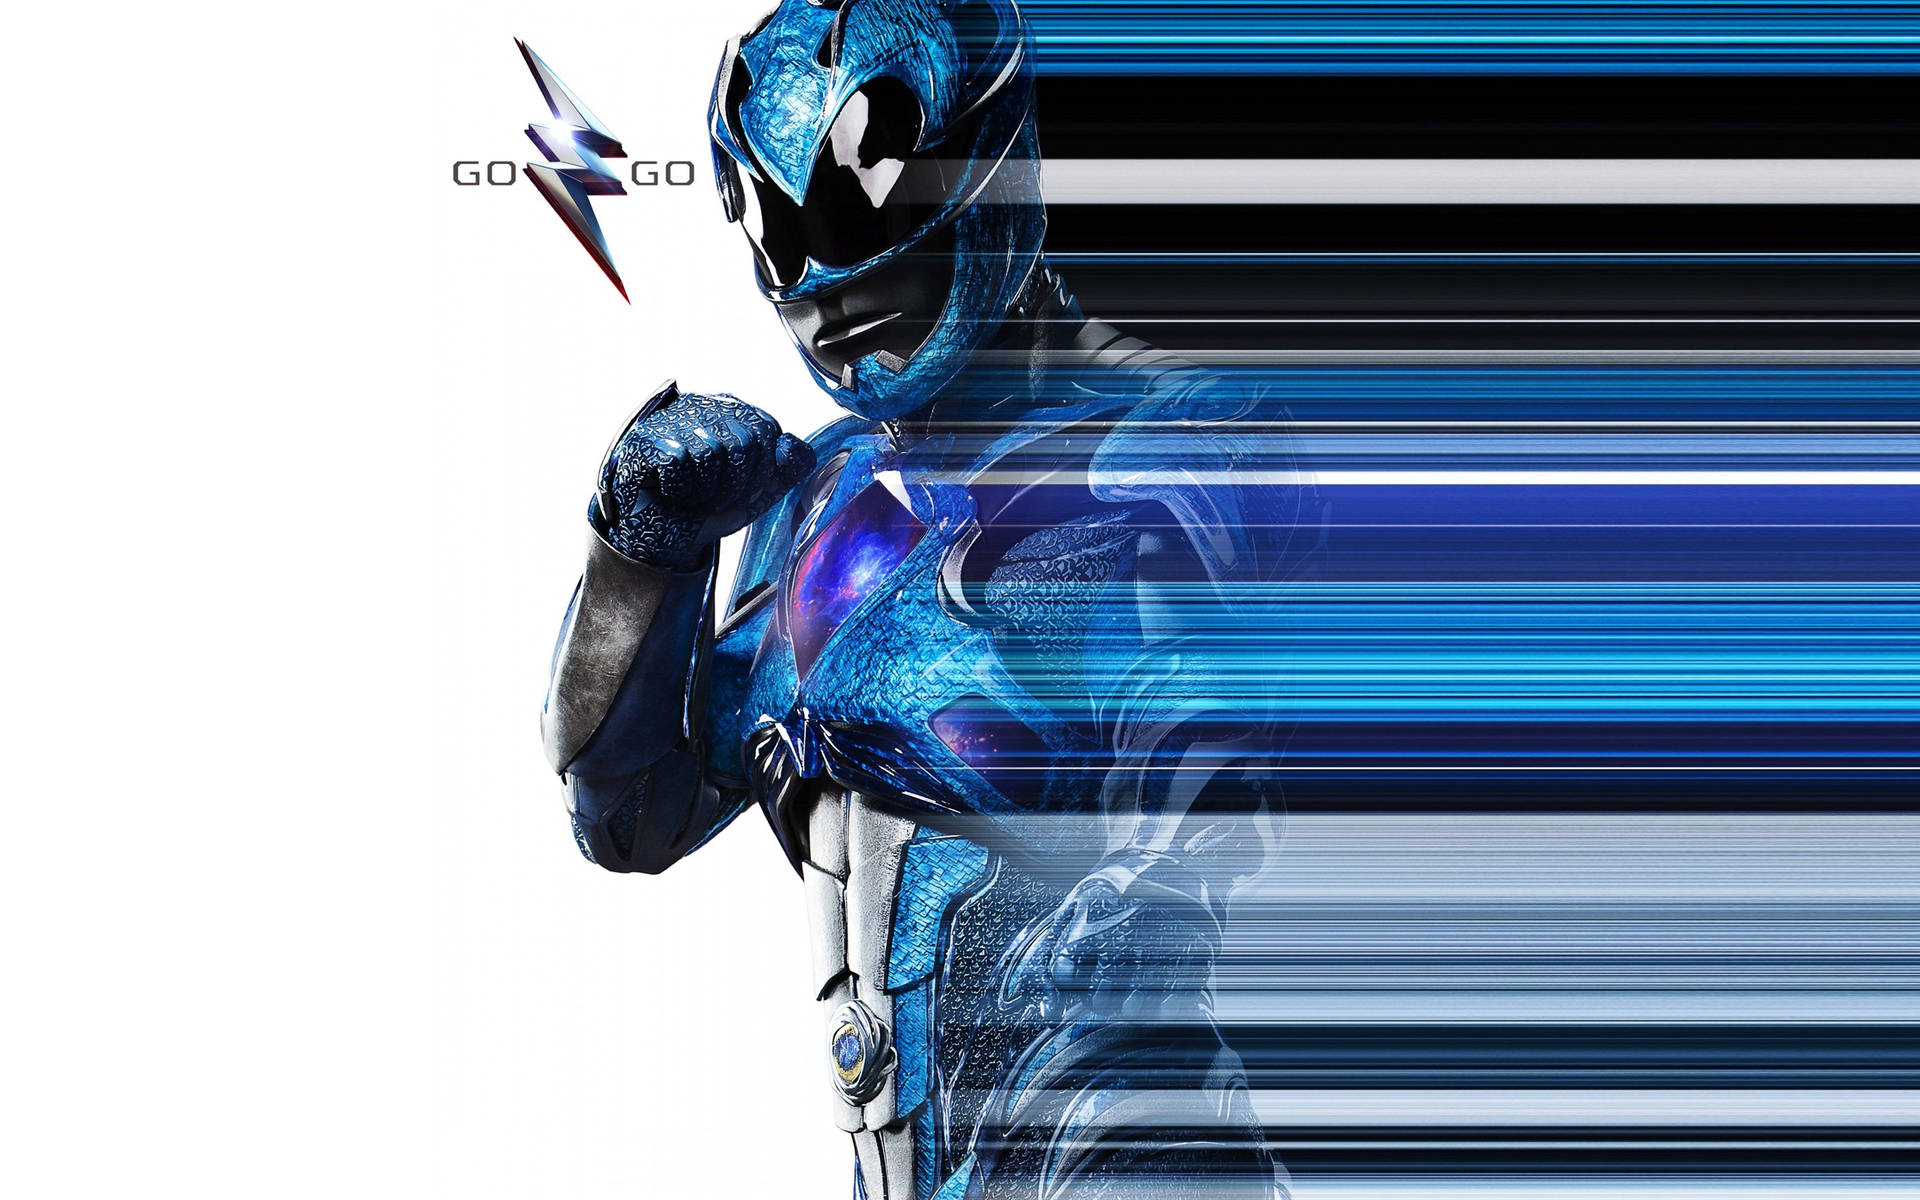 Cool Blue Power Rangers Wallpaper